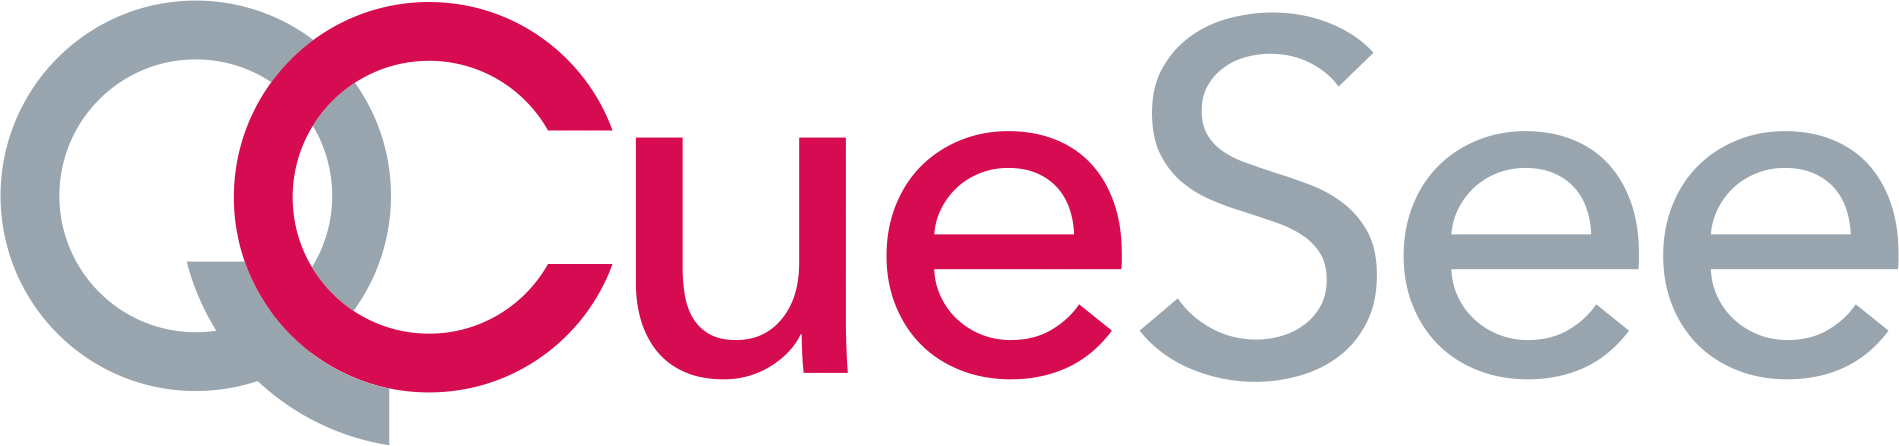 CueSee's logo